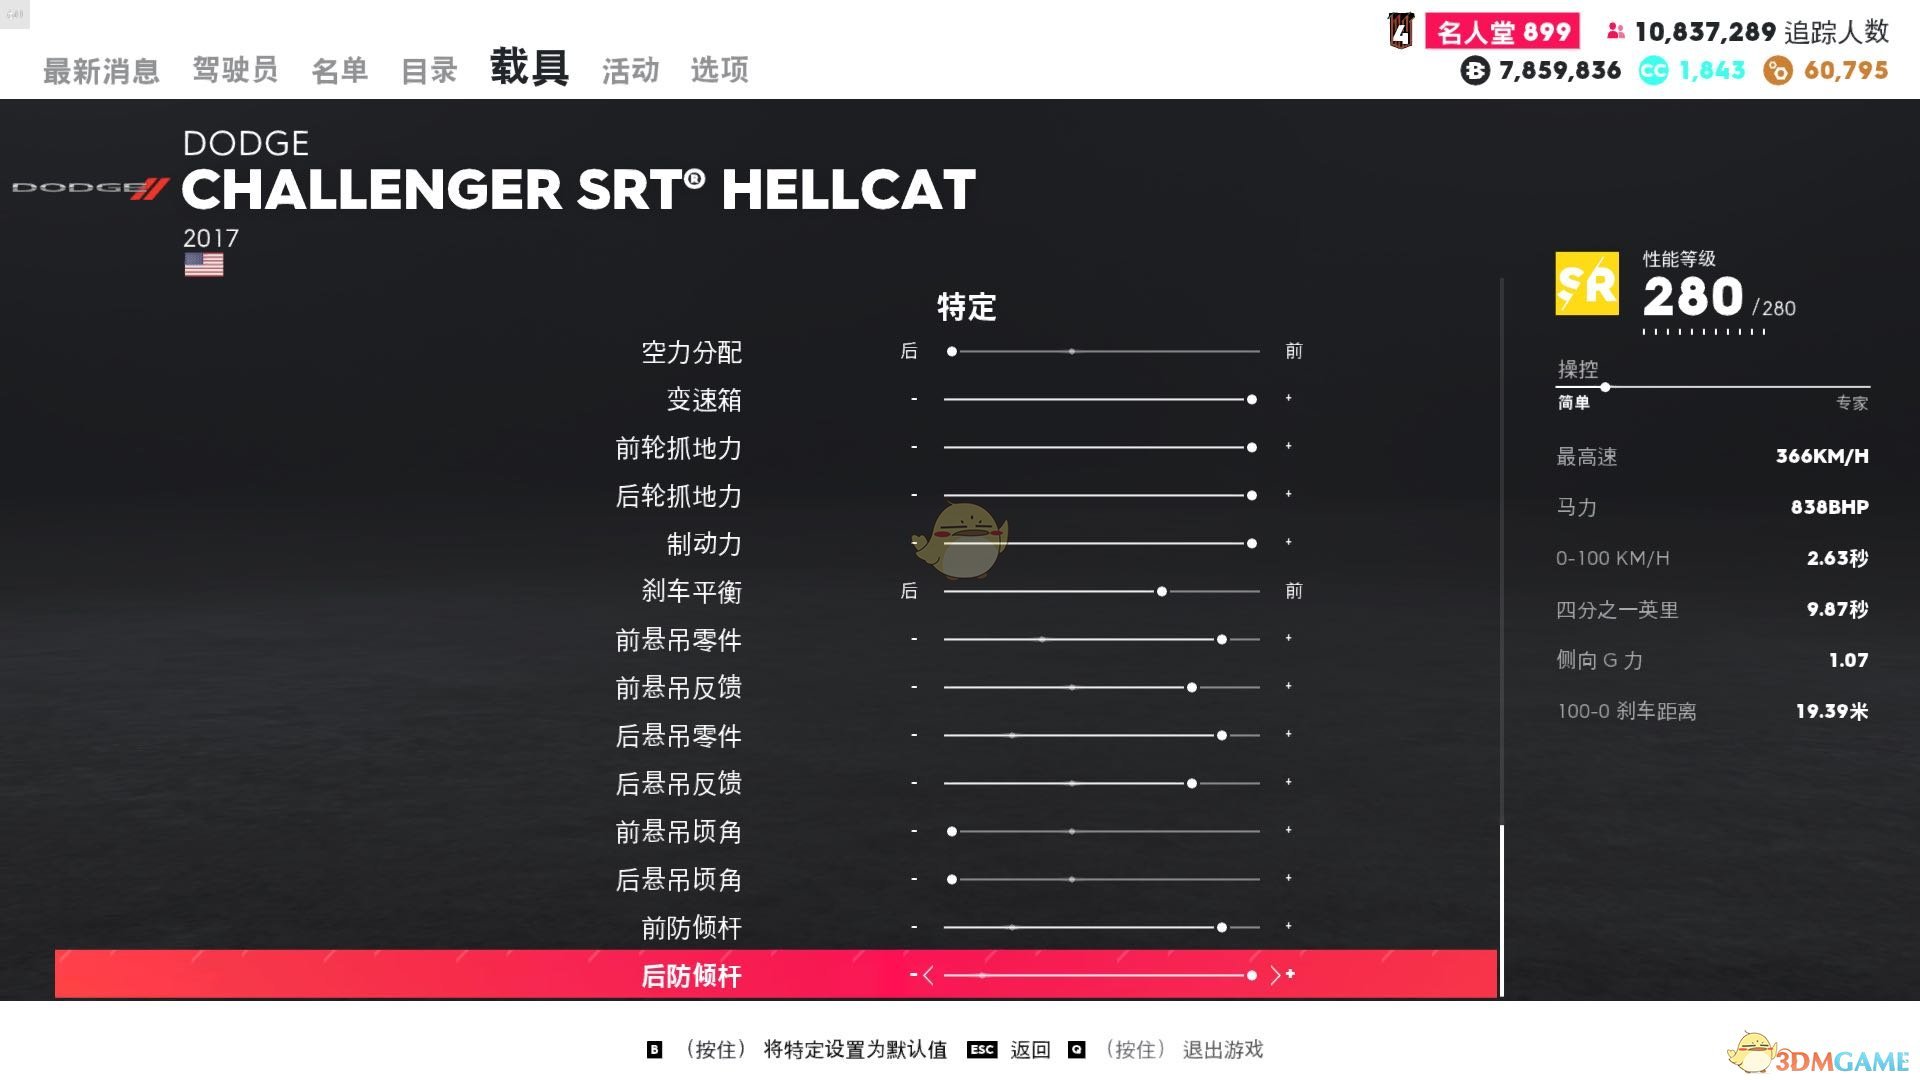 《飆酷車神2》道奇 CHALLENGER SRT 地獄貓走線風格調校指南